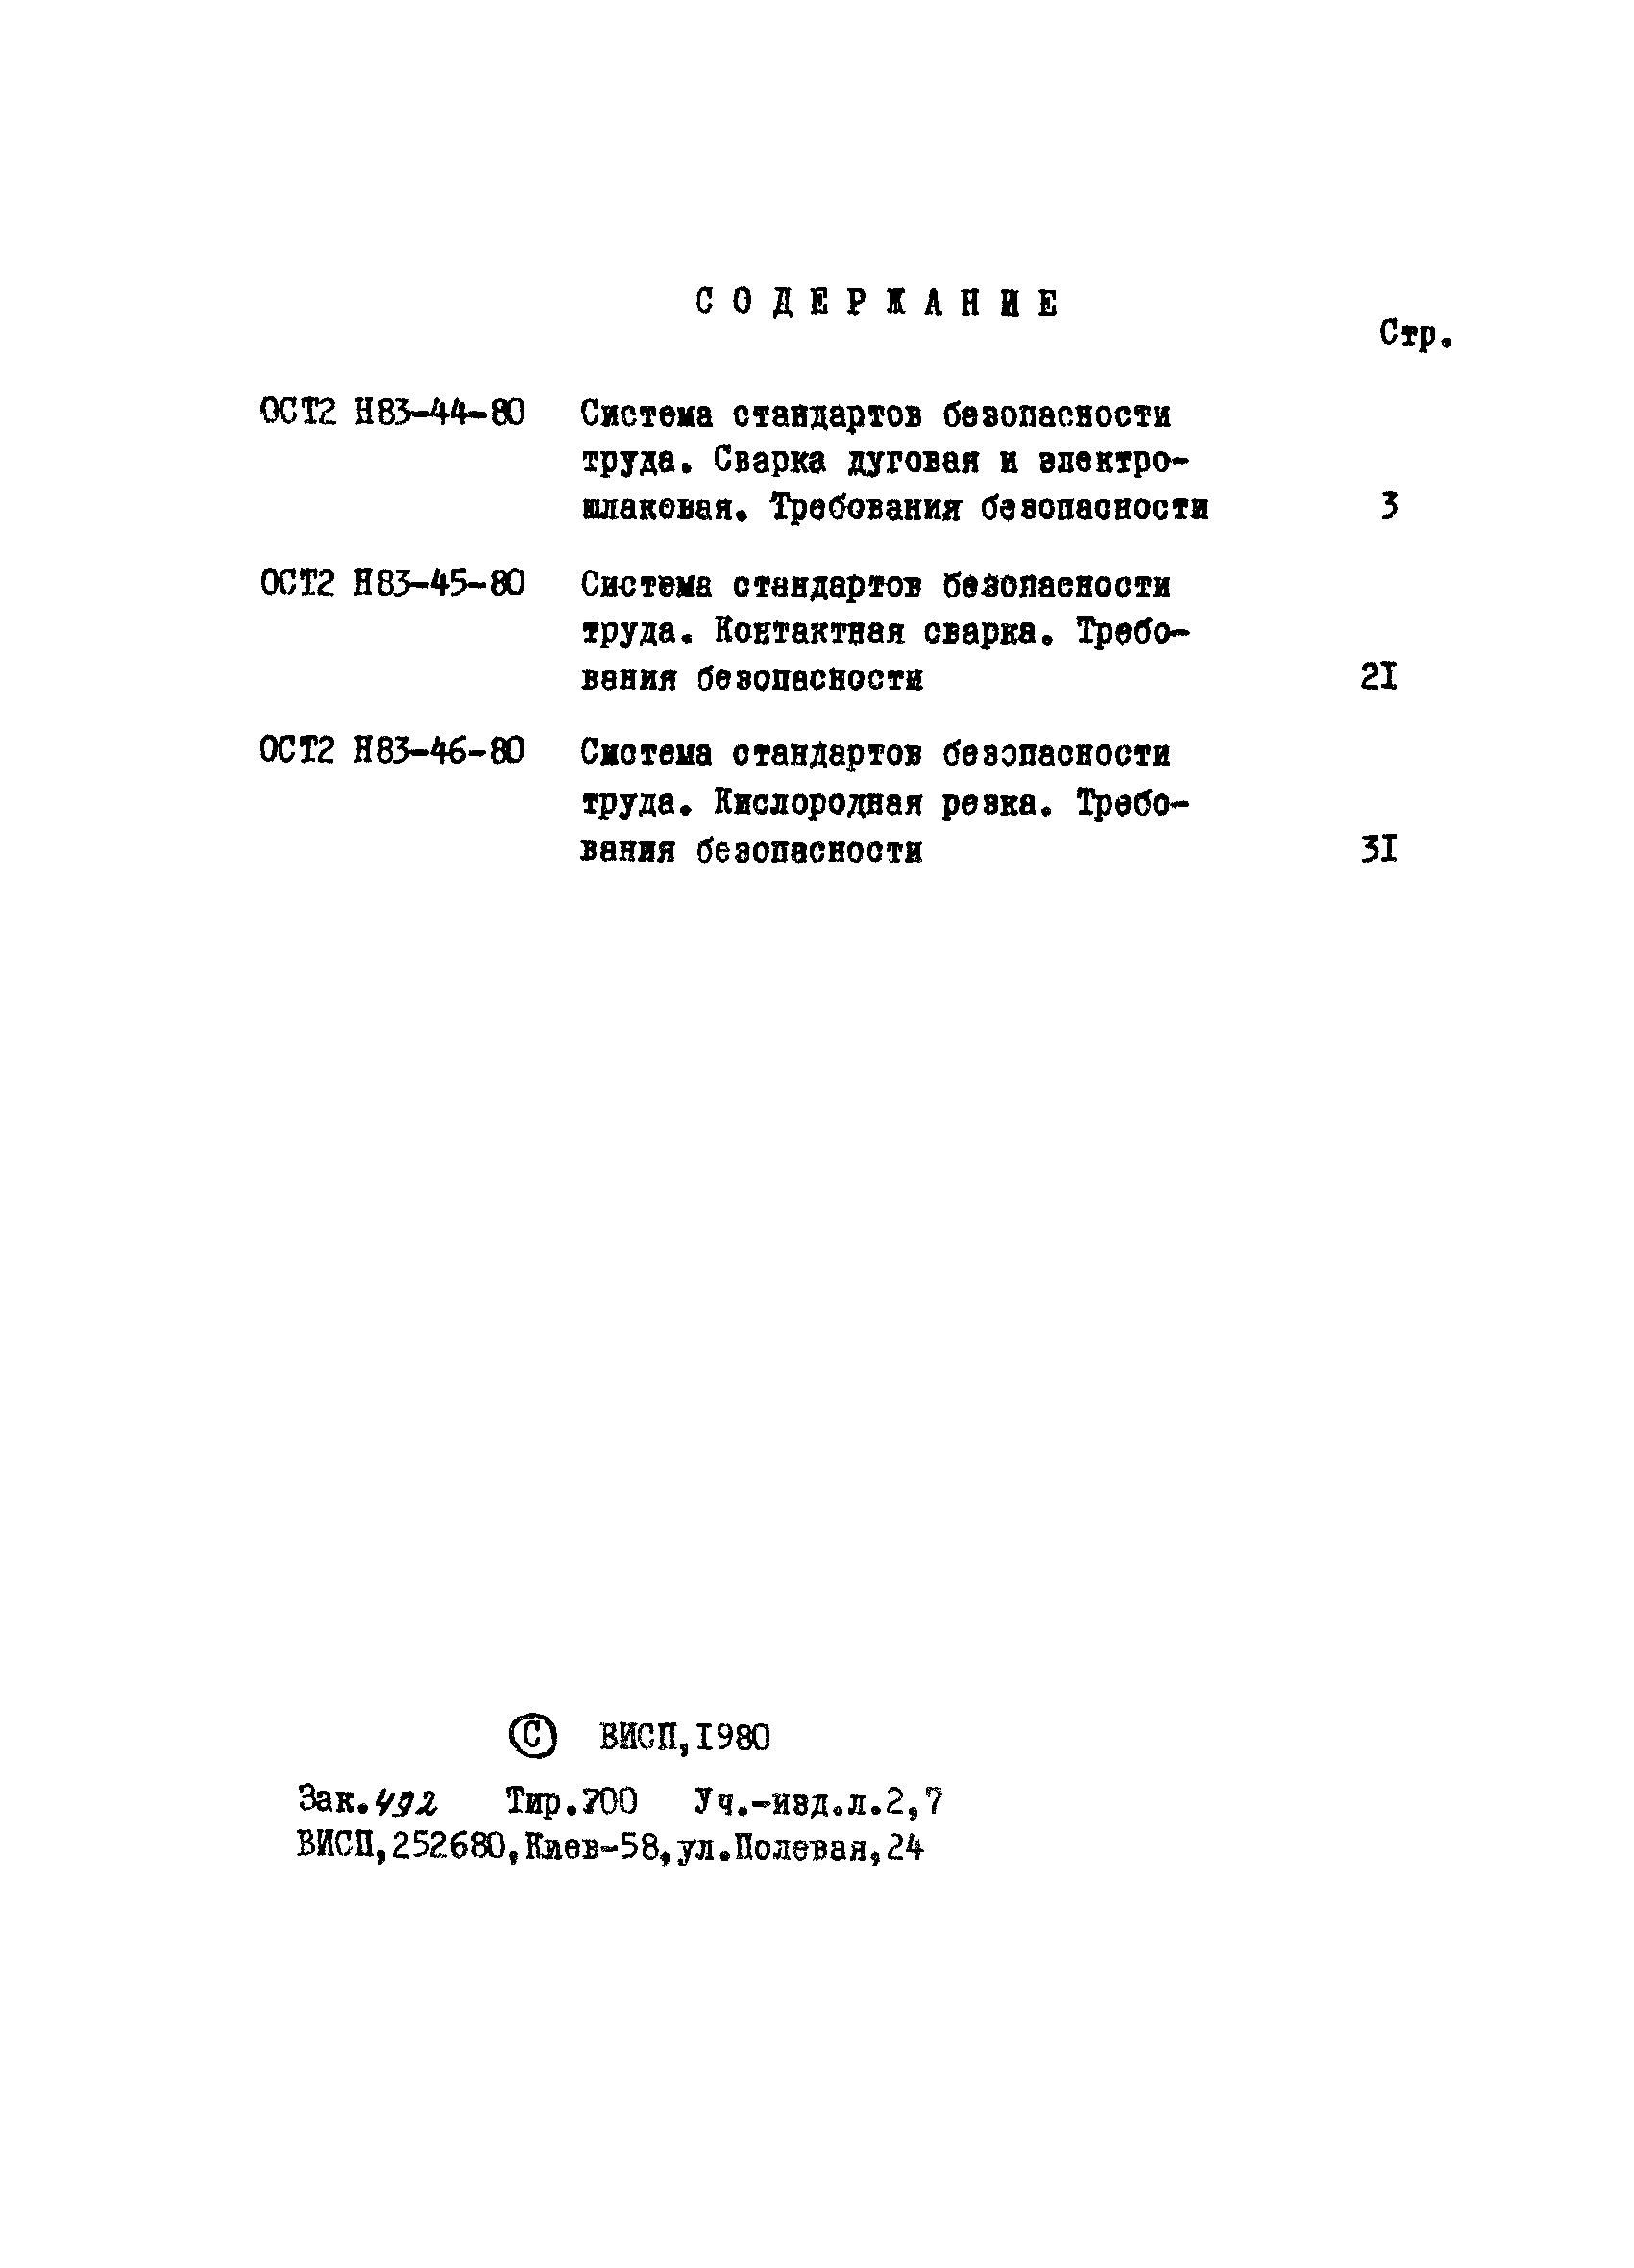 ОСТ 2 Н83-46-80